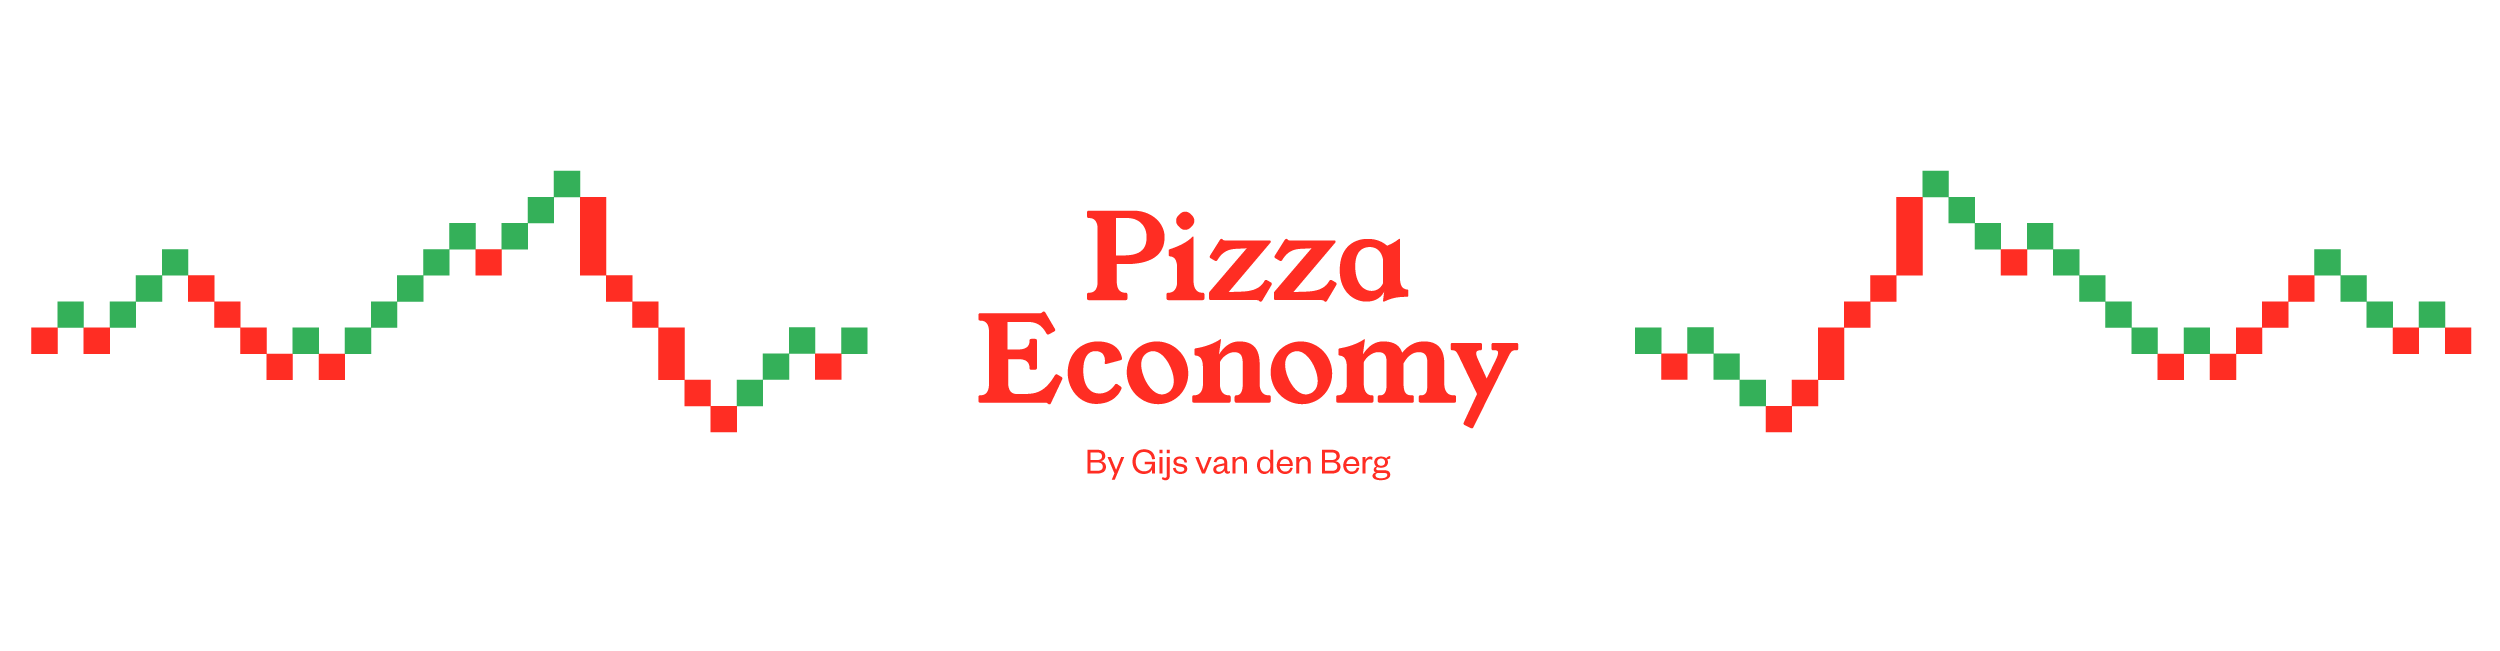 pizza-header